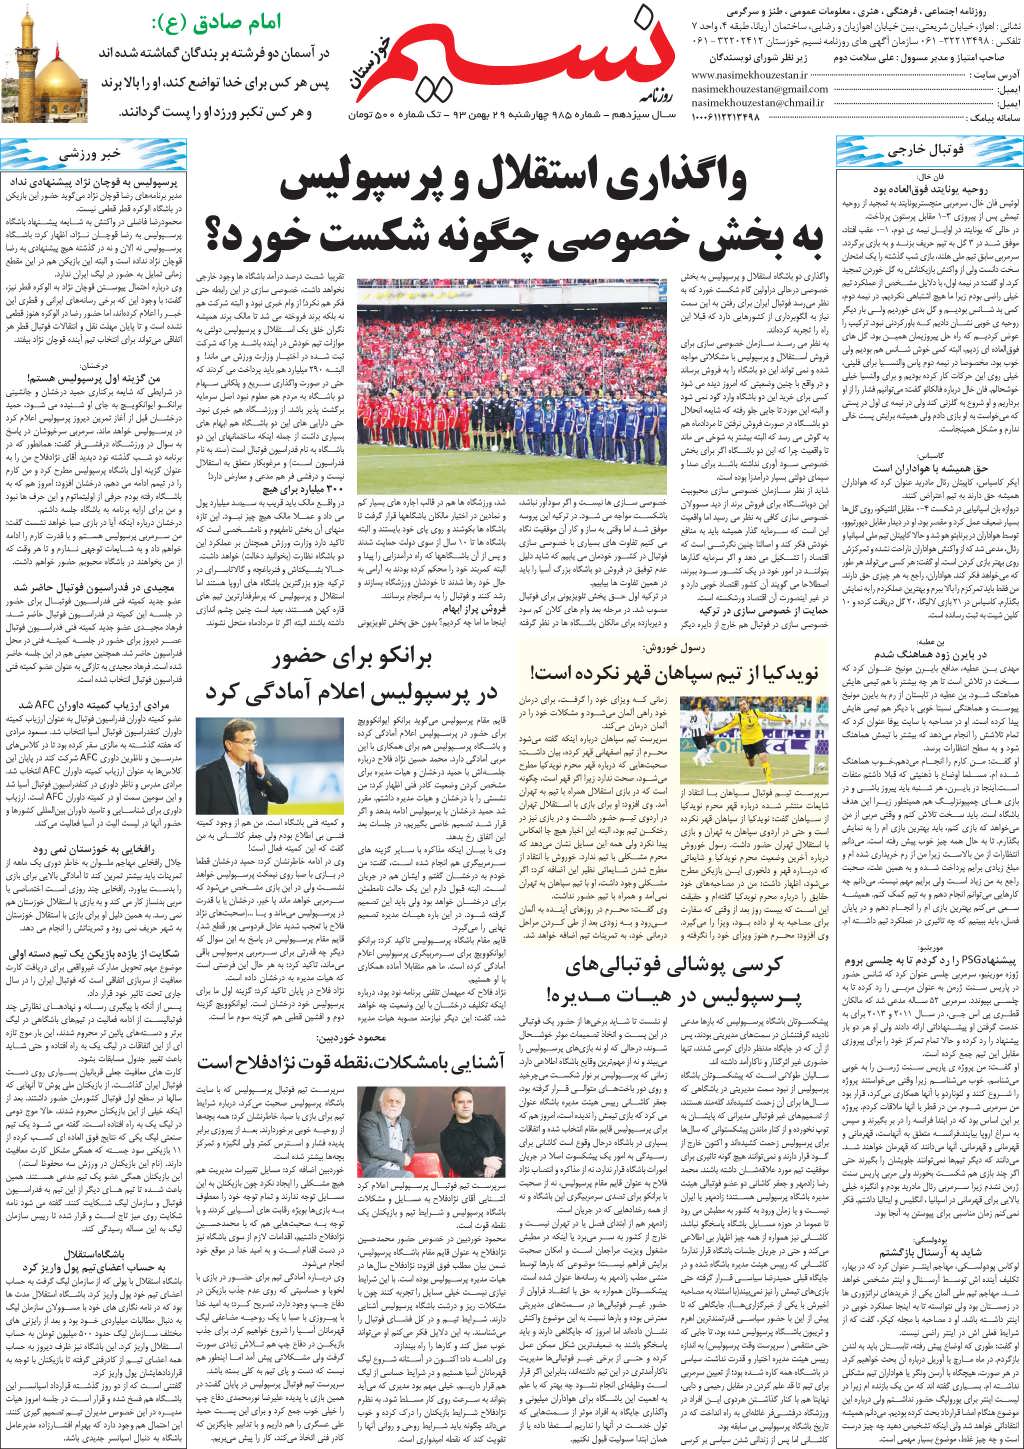 صفحه آخر روزنامه نسیم شماره 985